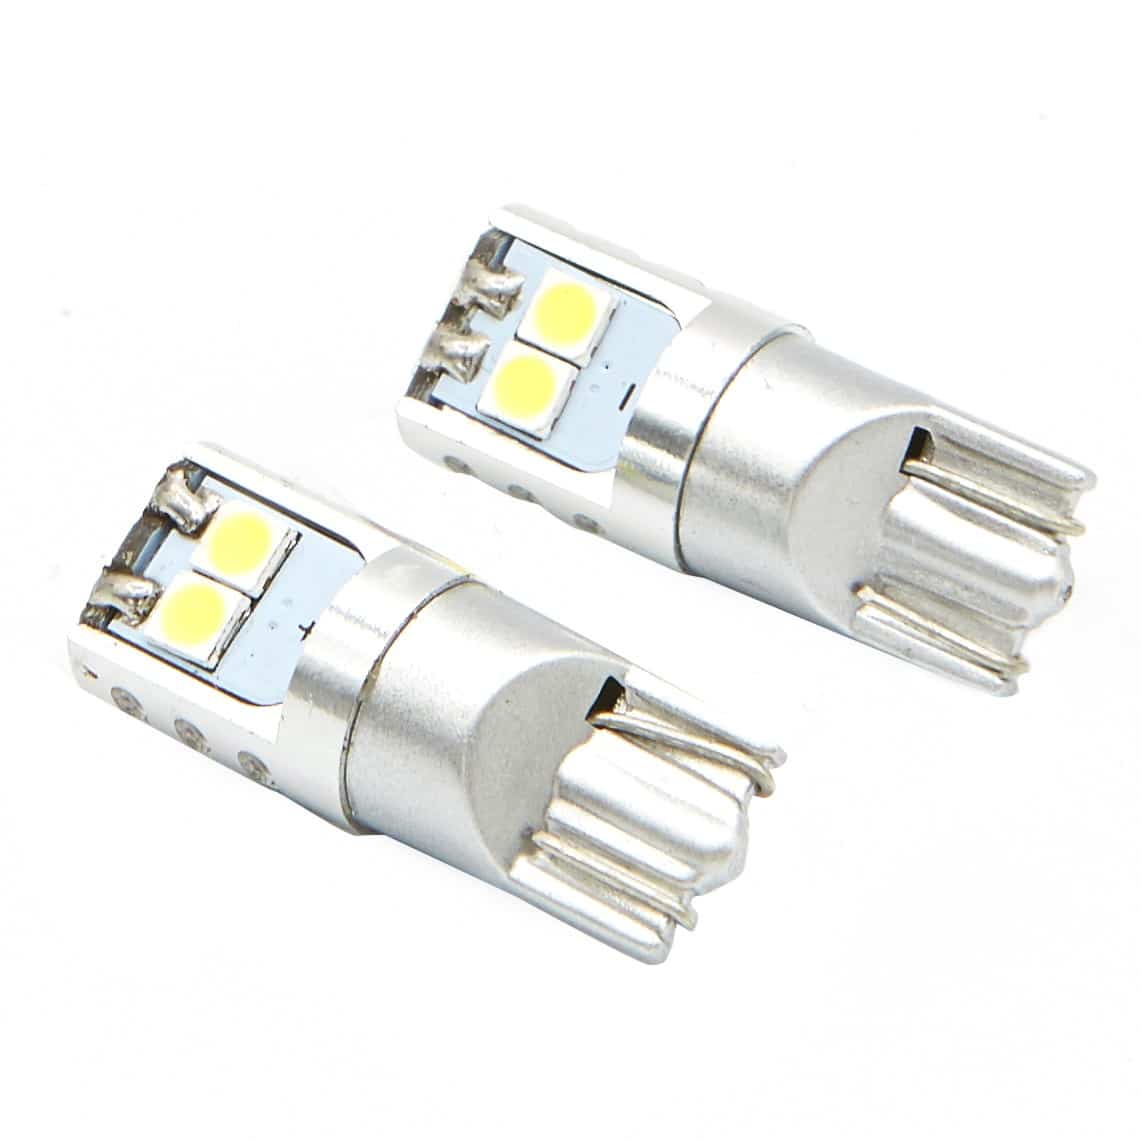 Lucas Lighting,T10 194 6 LED Canbus Bulb (White)